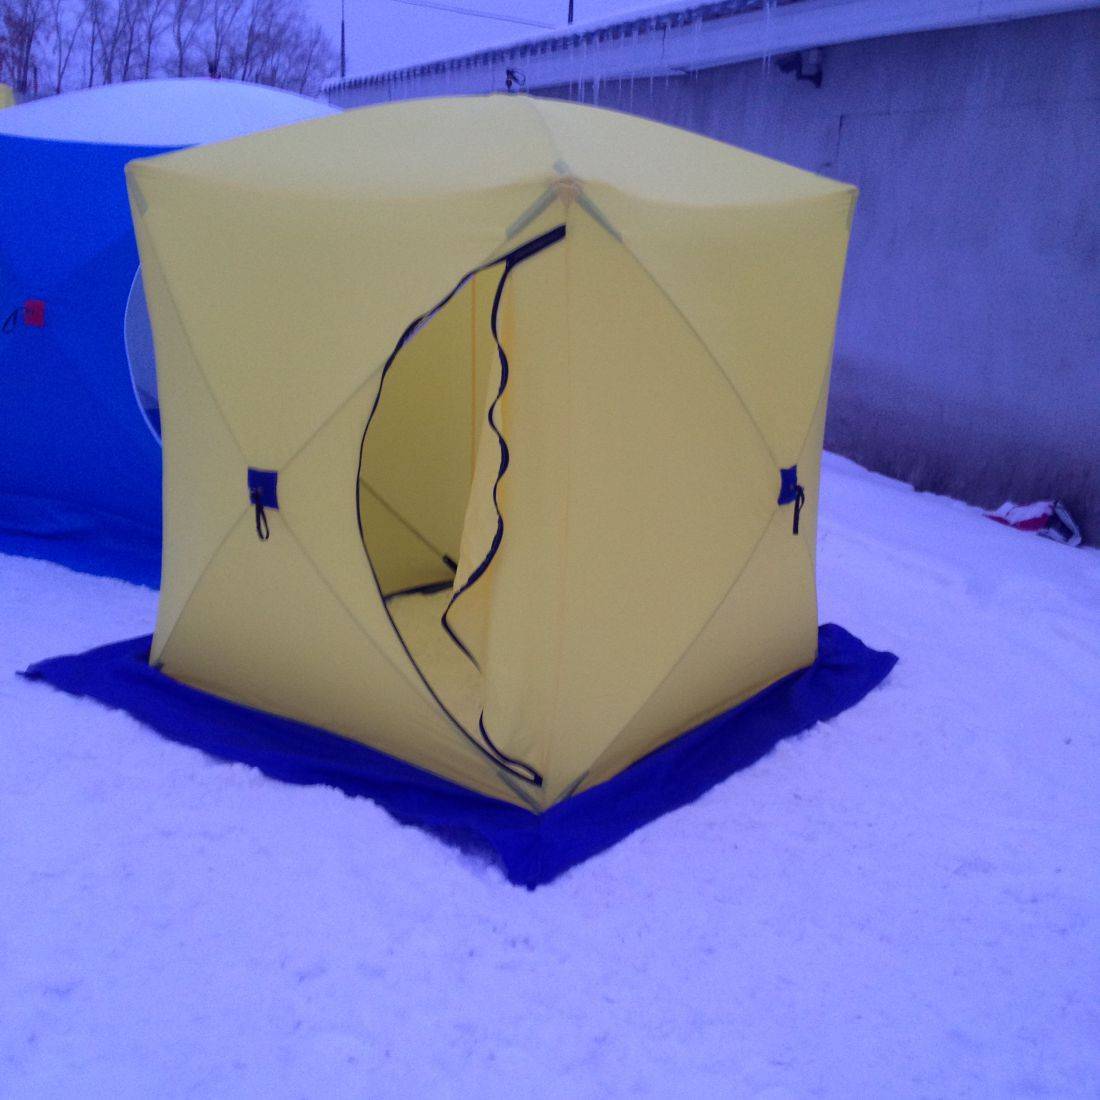 Палатка для зимней рыбалки как выбрать, на что обратить внимание